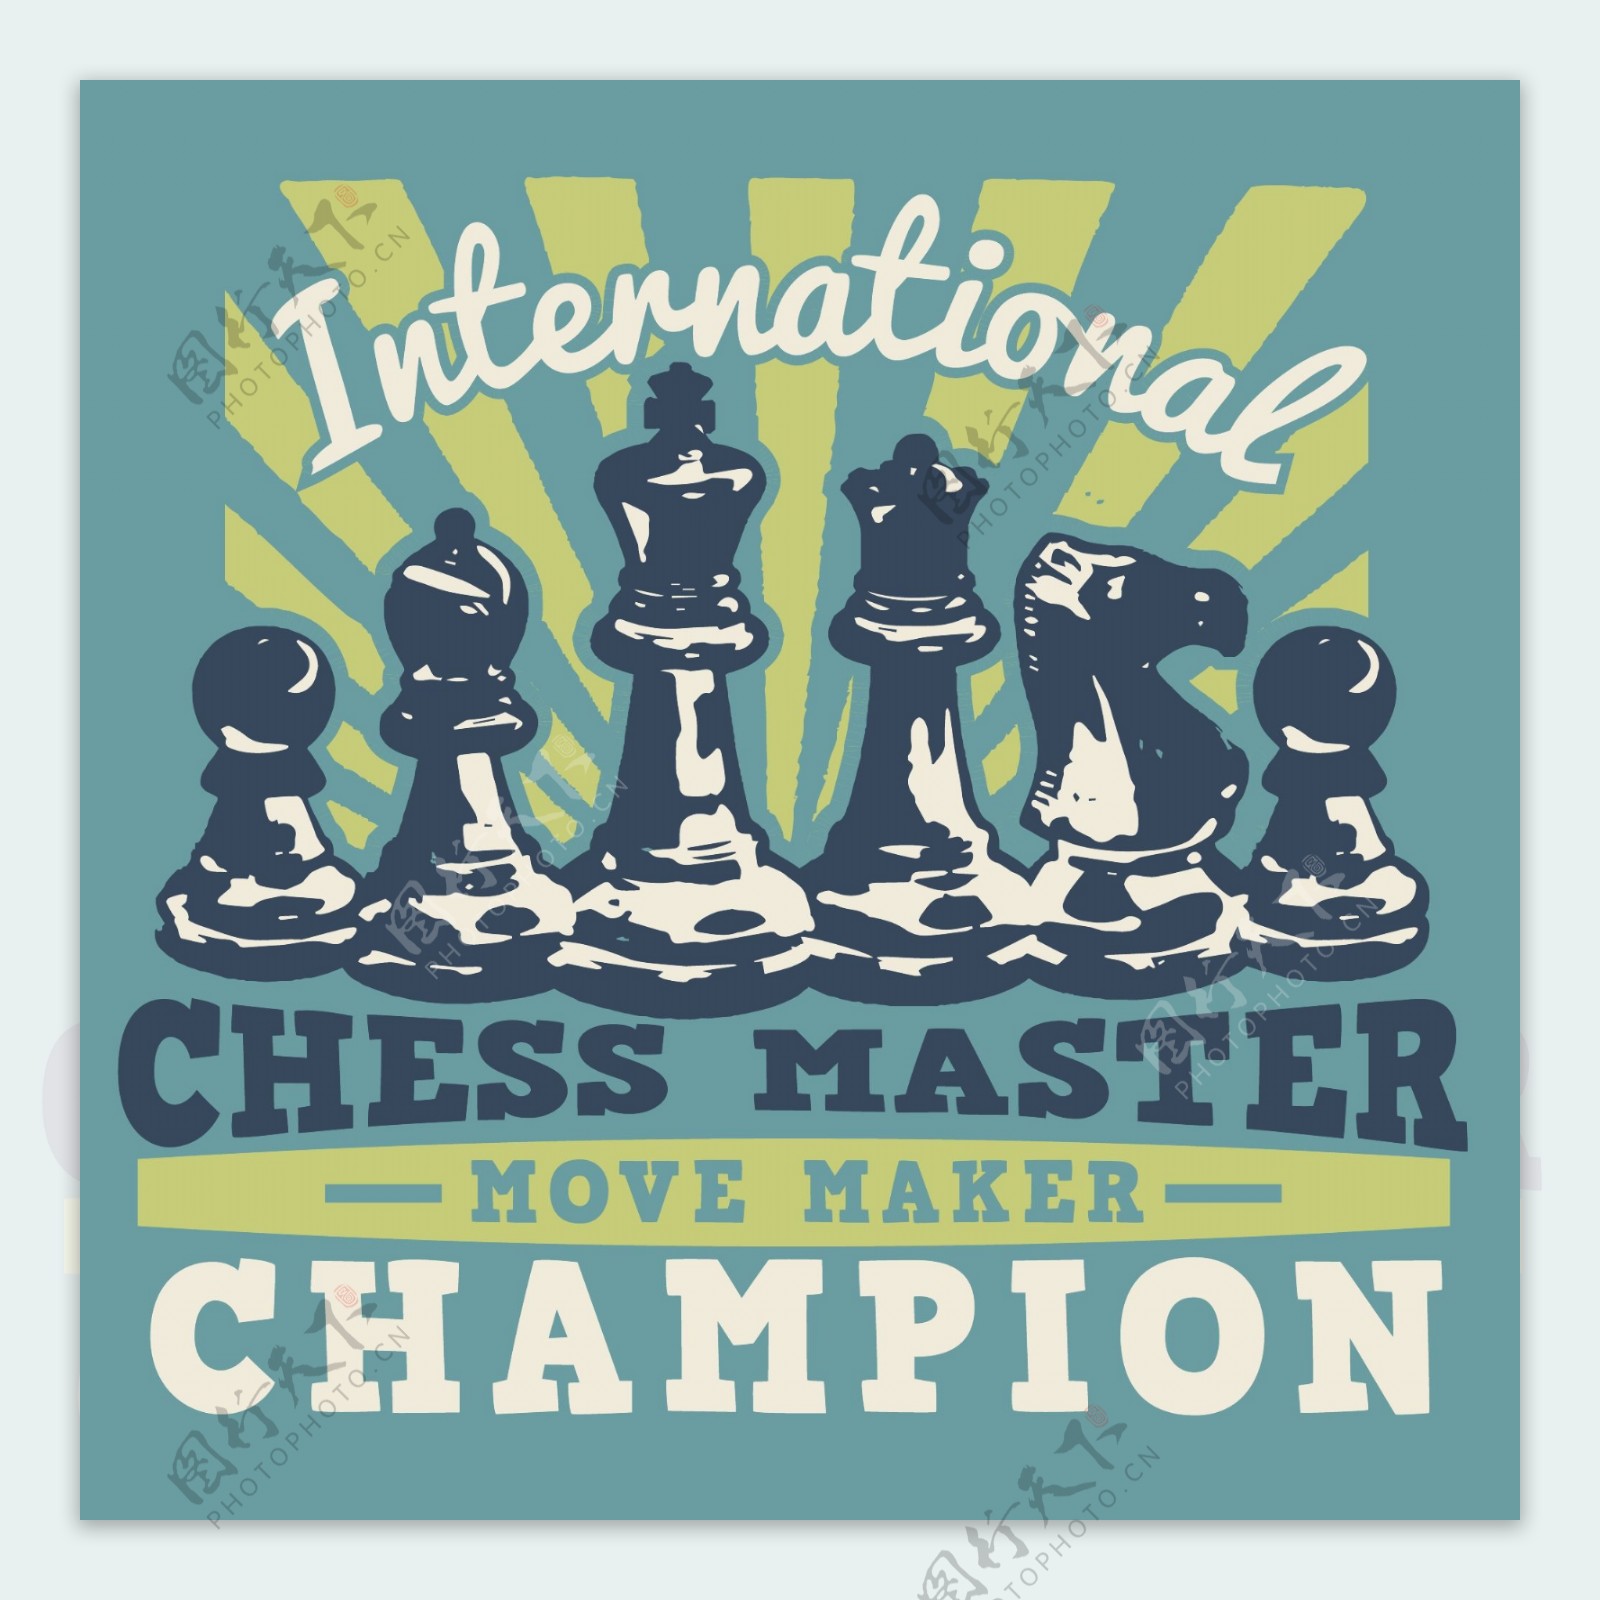 印花矢量图T恤图案图文结合生活元素国际象棋免费素材